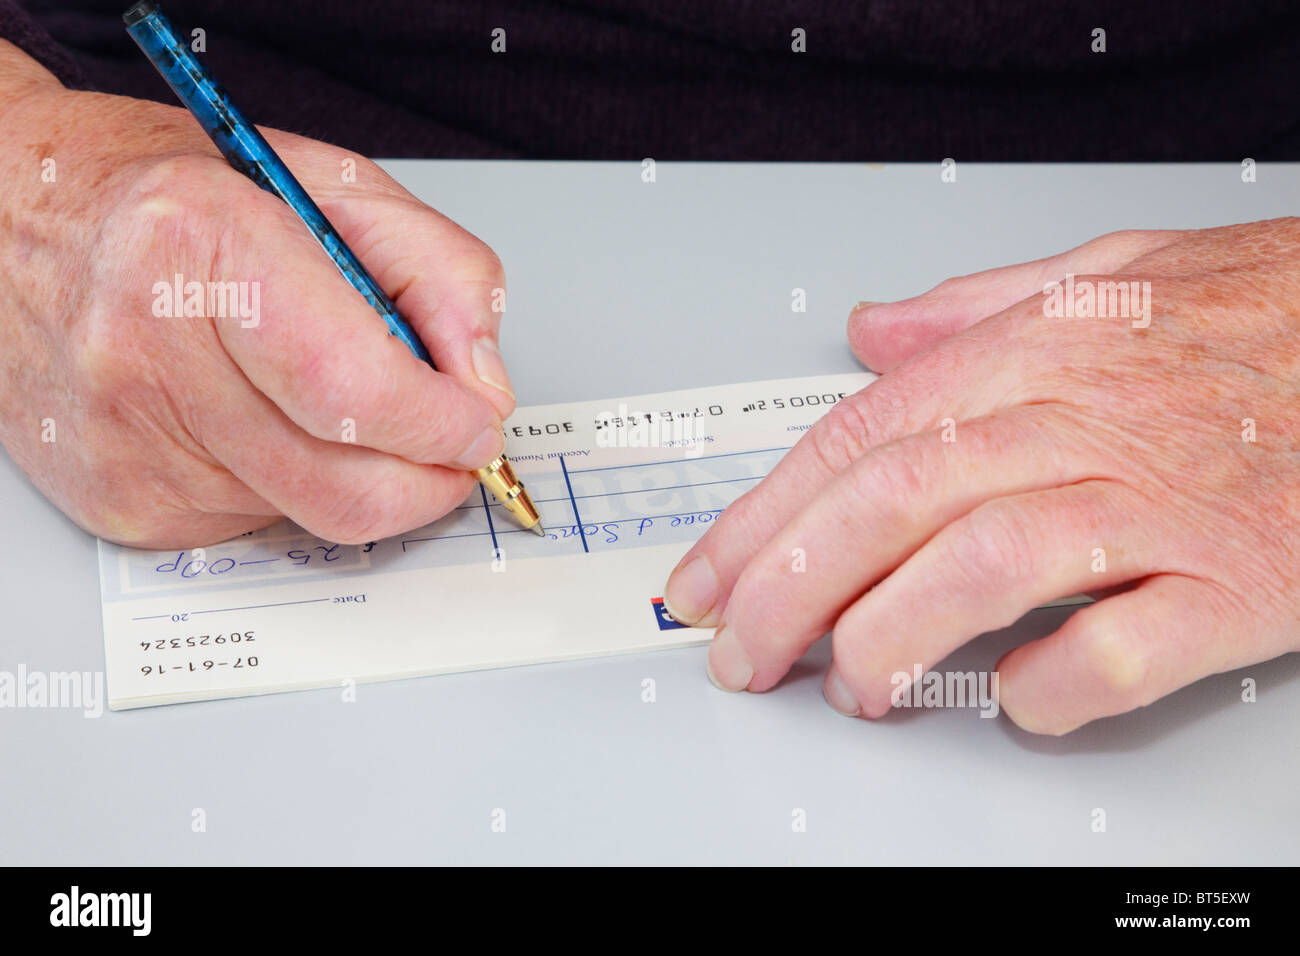 Nahaufnahme eines Rentners senior ältere Frau einen Scheck (Scheck) schreibt eine Rechnung zu bezahlen. England, UK, Großbritannien. Stockfoto